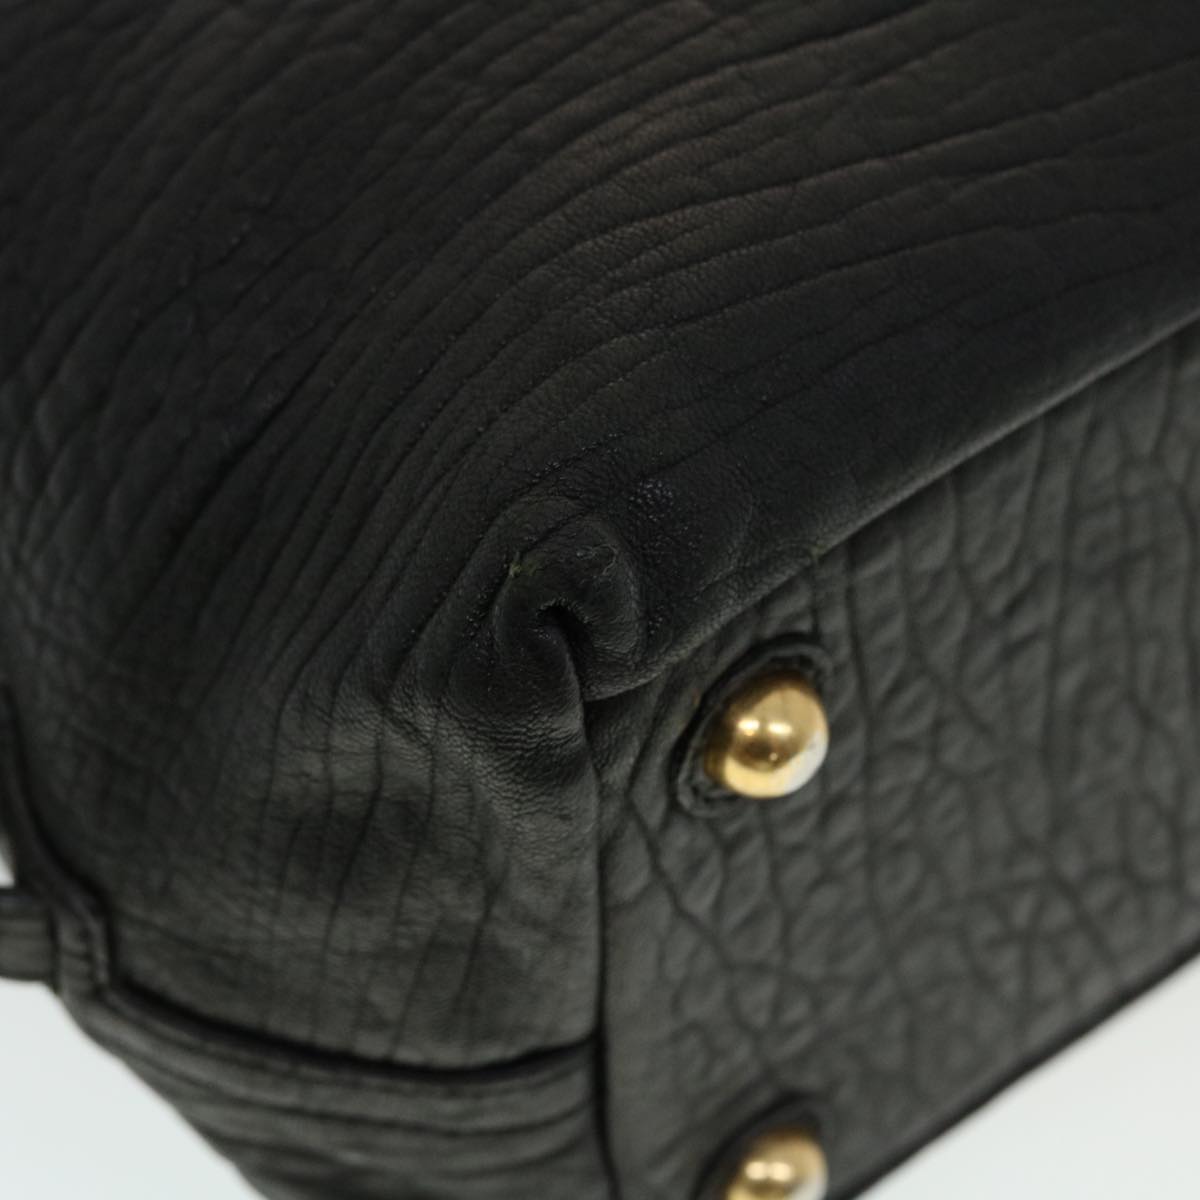 SAINT LAURENT Shoulder Bag Leather Black Auth bs5714